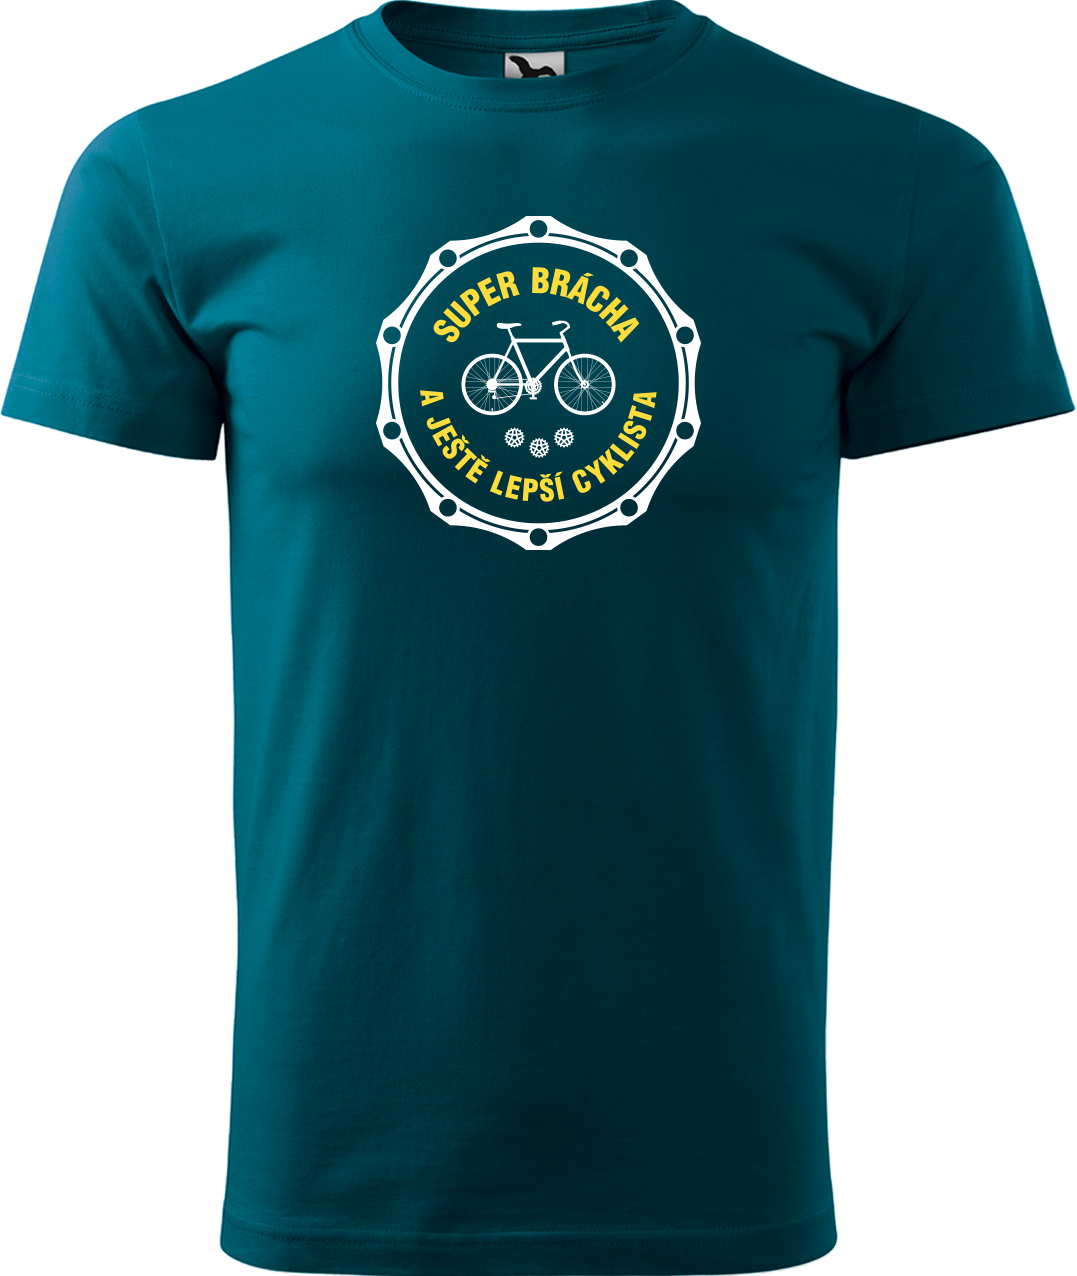 Pánské tričko pro cyklistu - Super brácha a ještě lepší cyklista Velikost: S, Barva: Petrolejová (93)